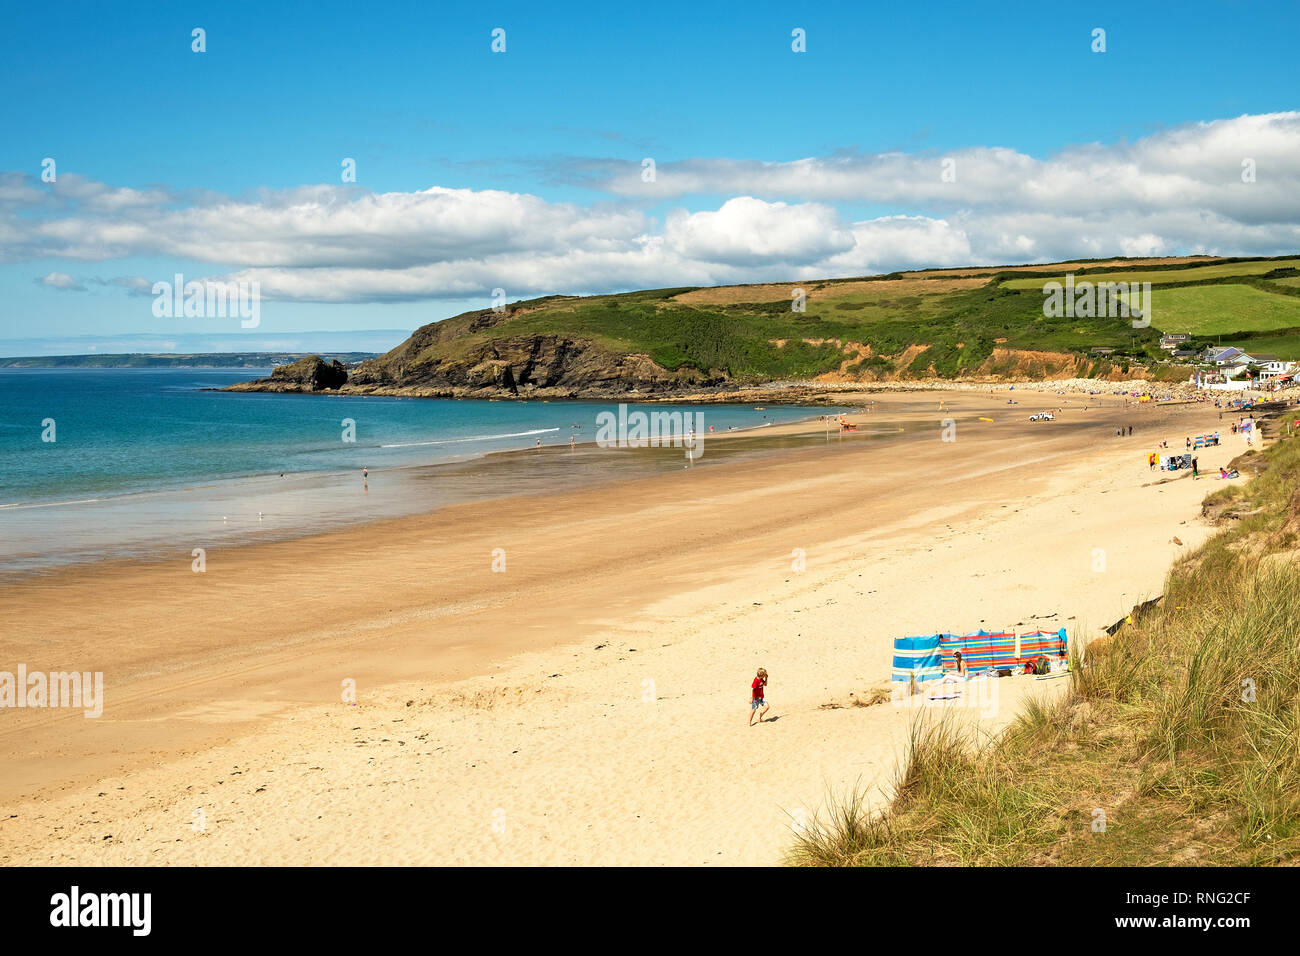 Spiaggia sabbiosa a praa sands, Cornwall, Inghilterra, Regno Unito, Foto Stock